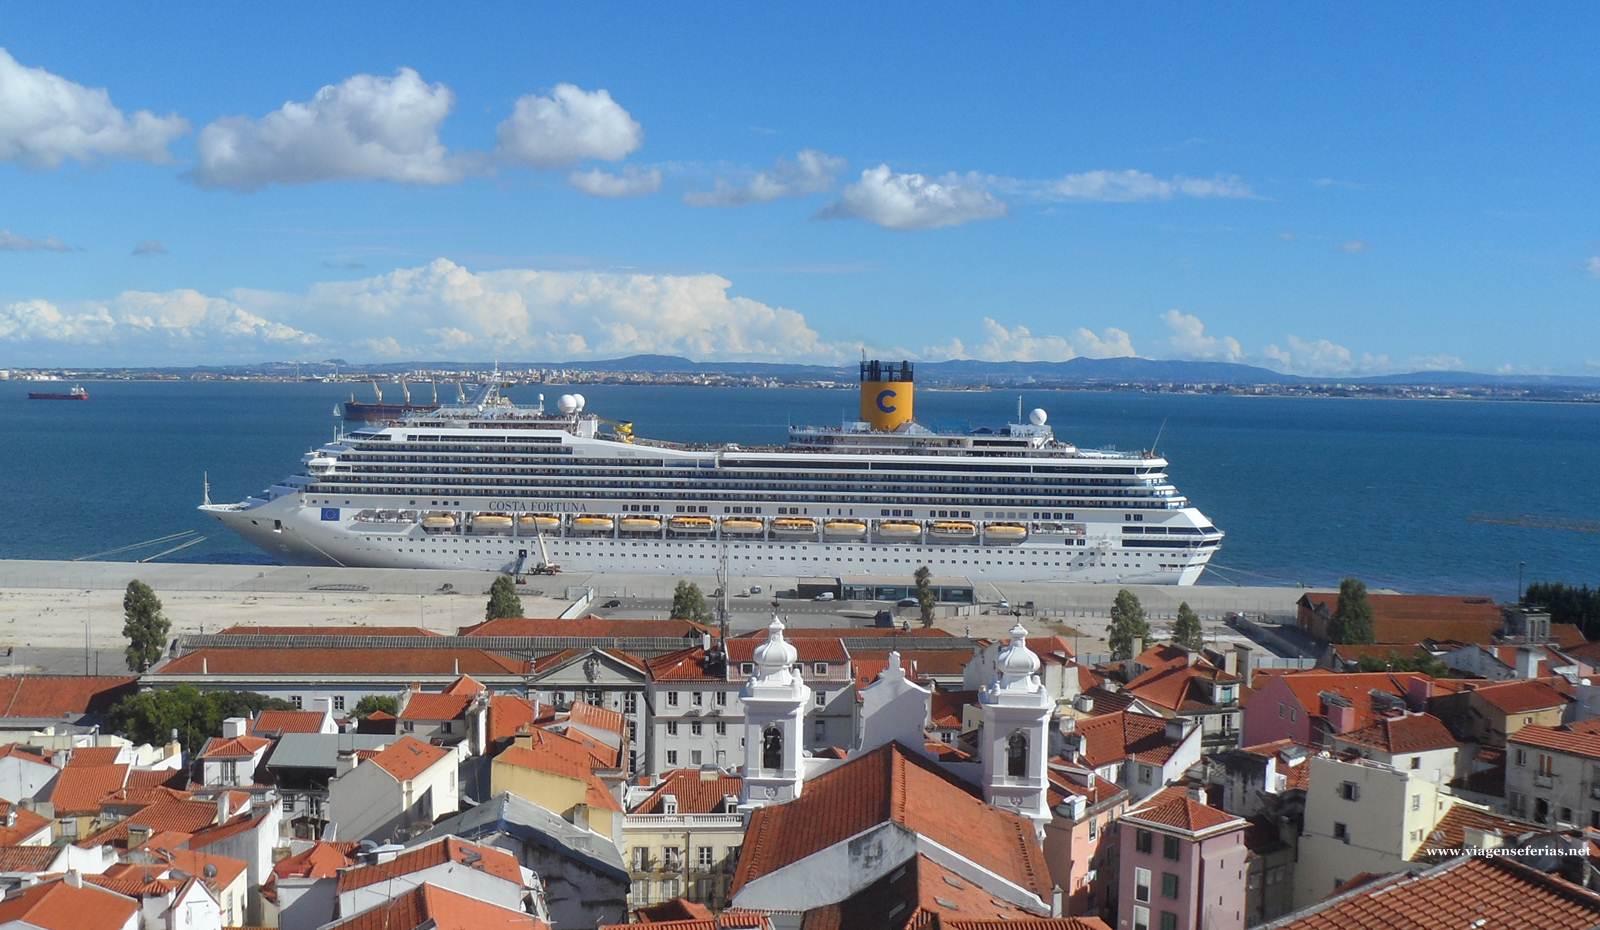 Navio de Cruzeiros Costa Fortuna atracado no porto de Lisboa